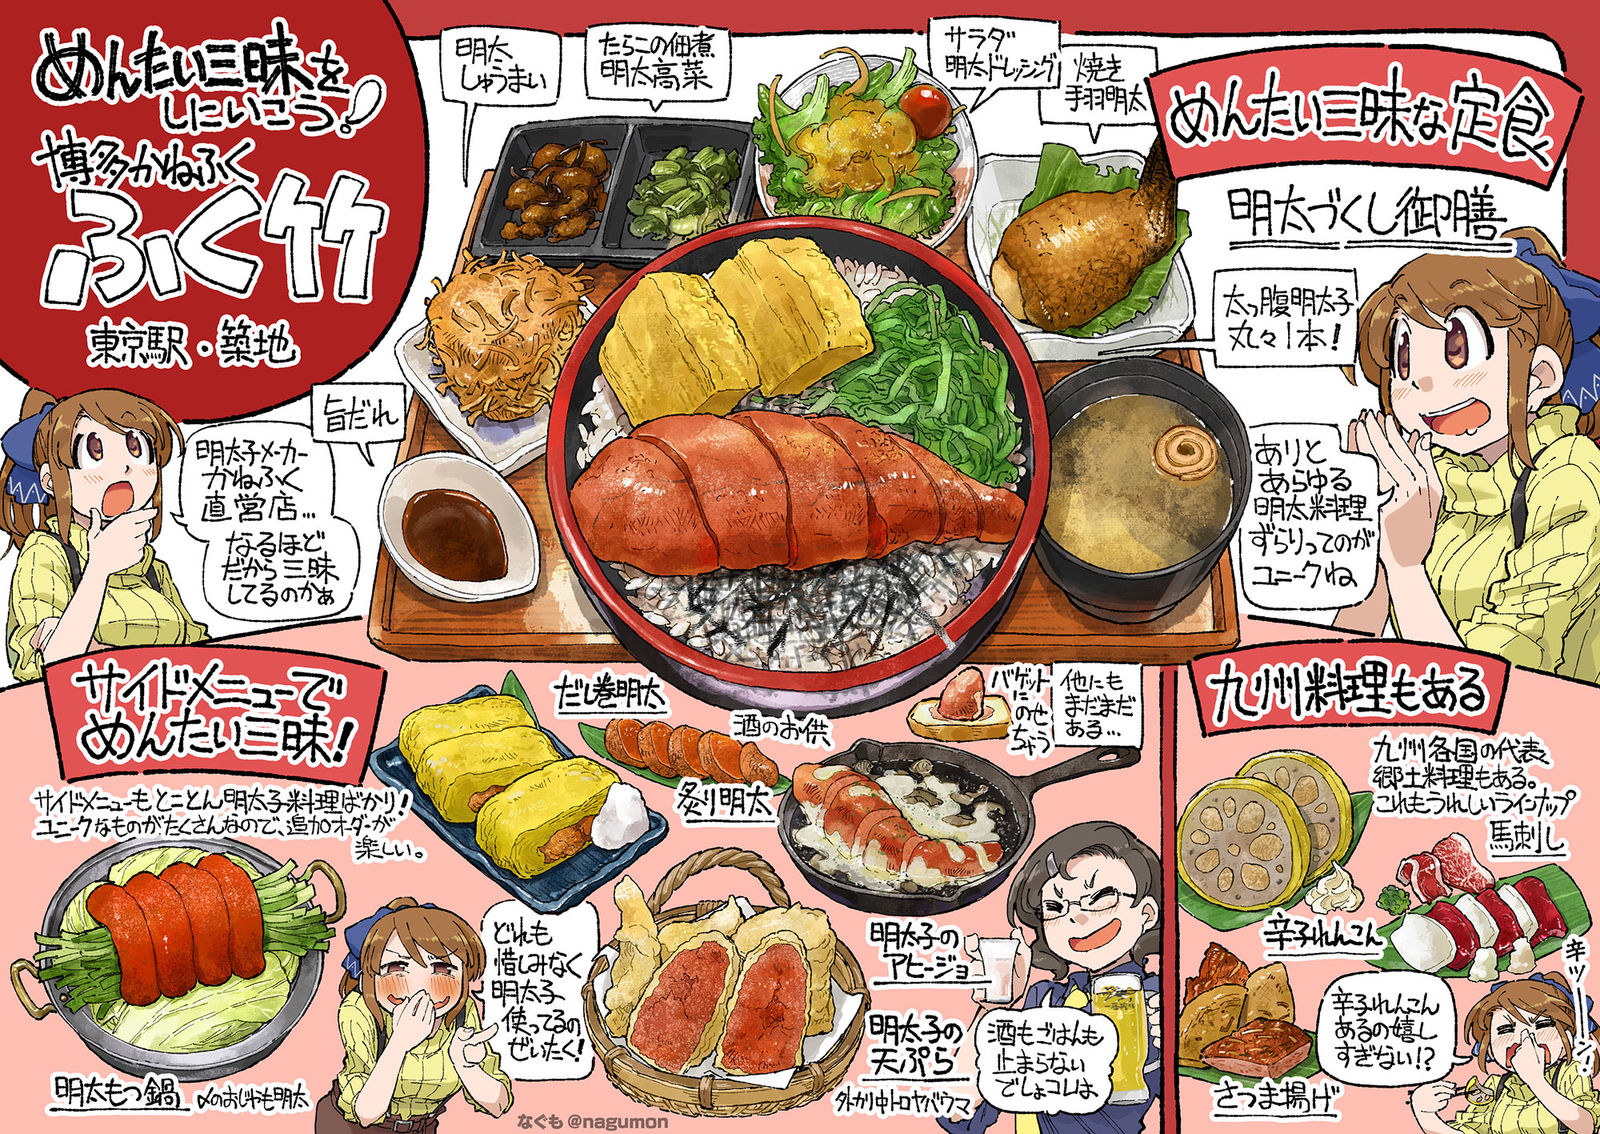 在东京站发现的能吃到所有明太子料理的明太子专卖店